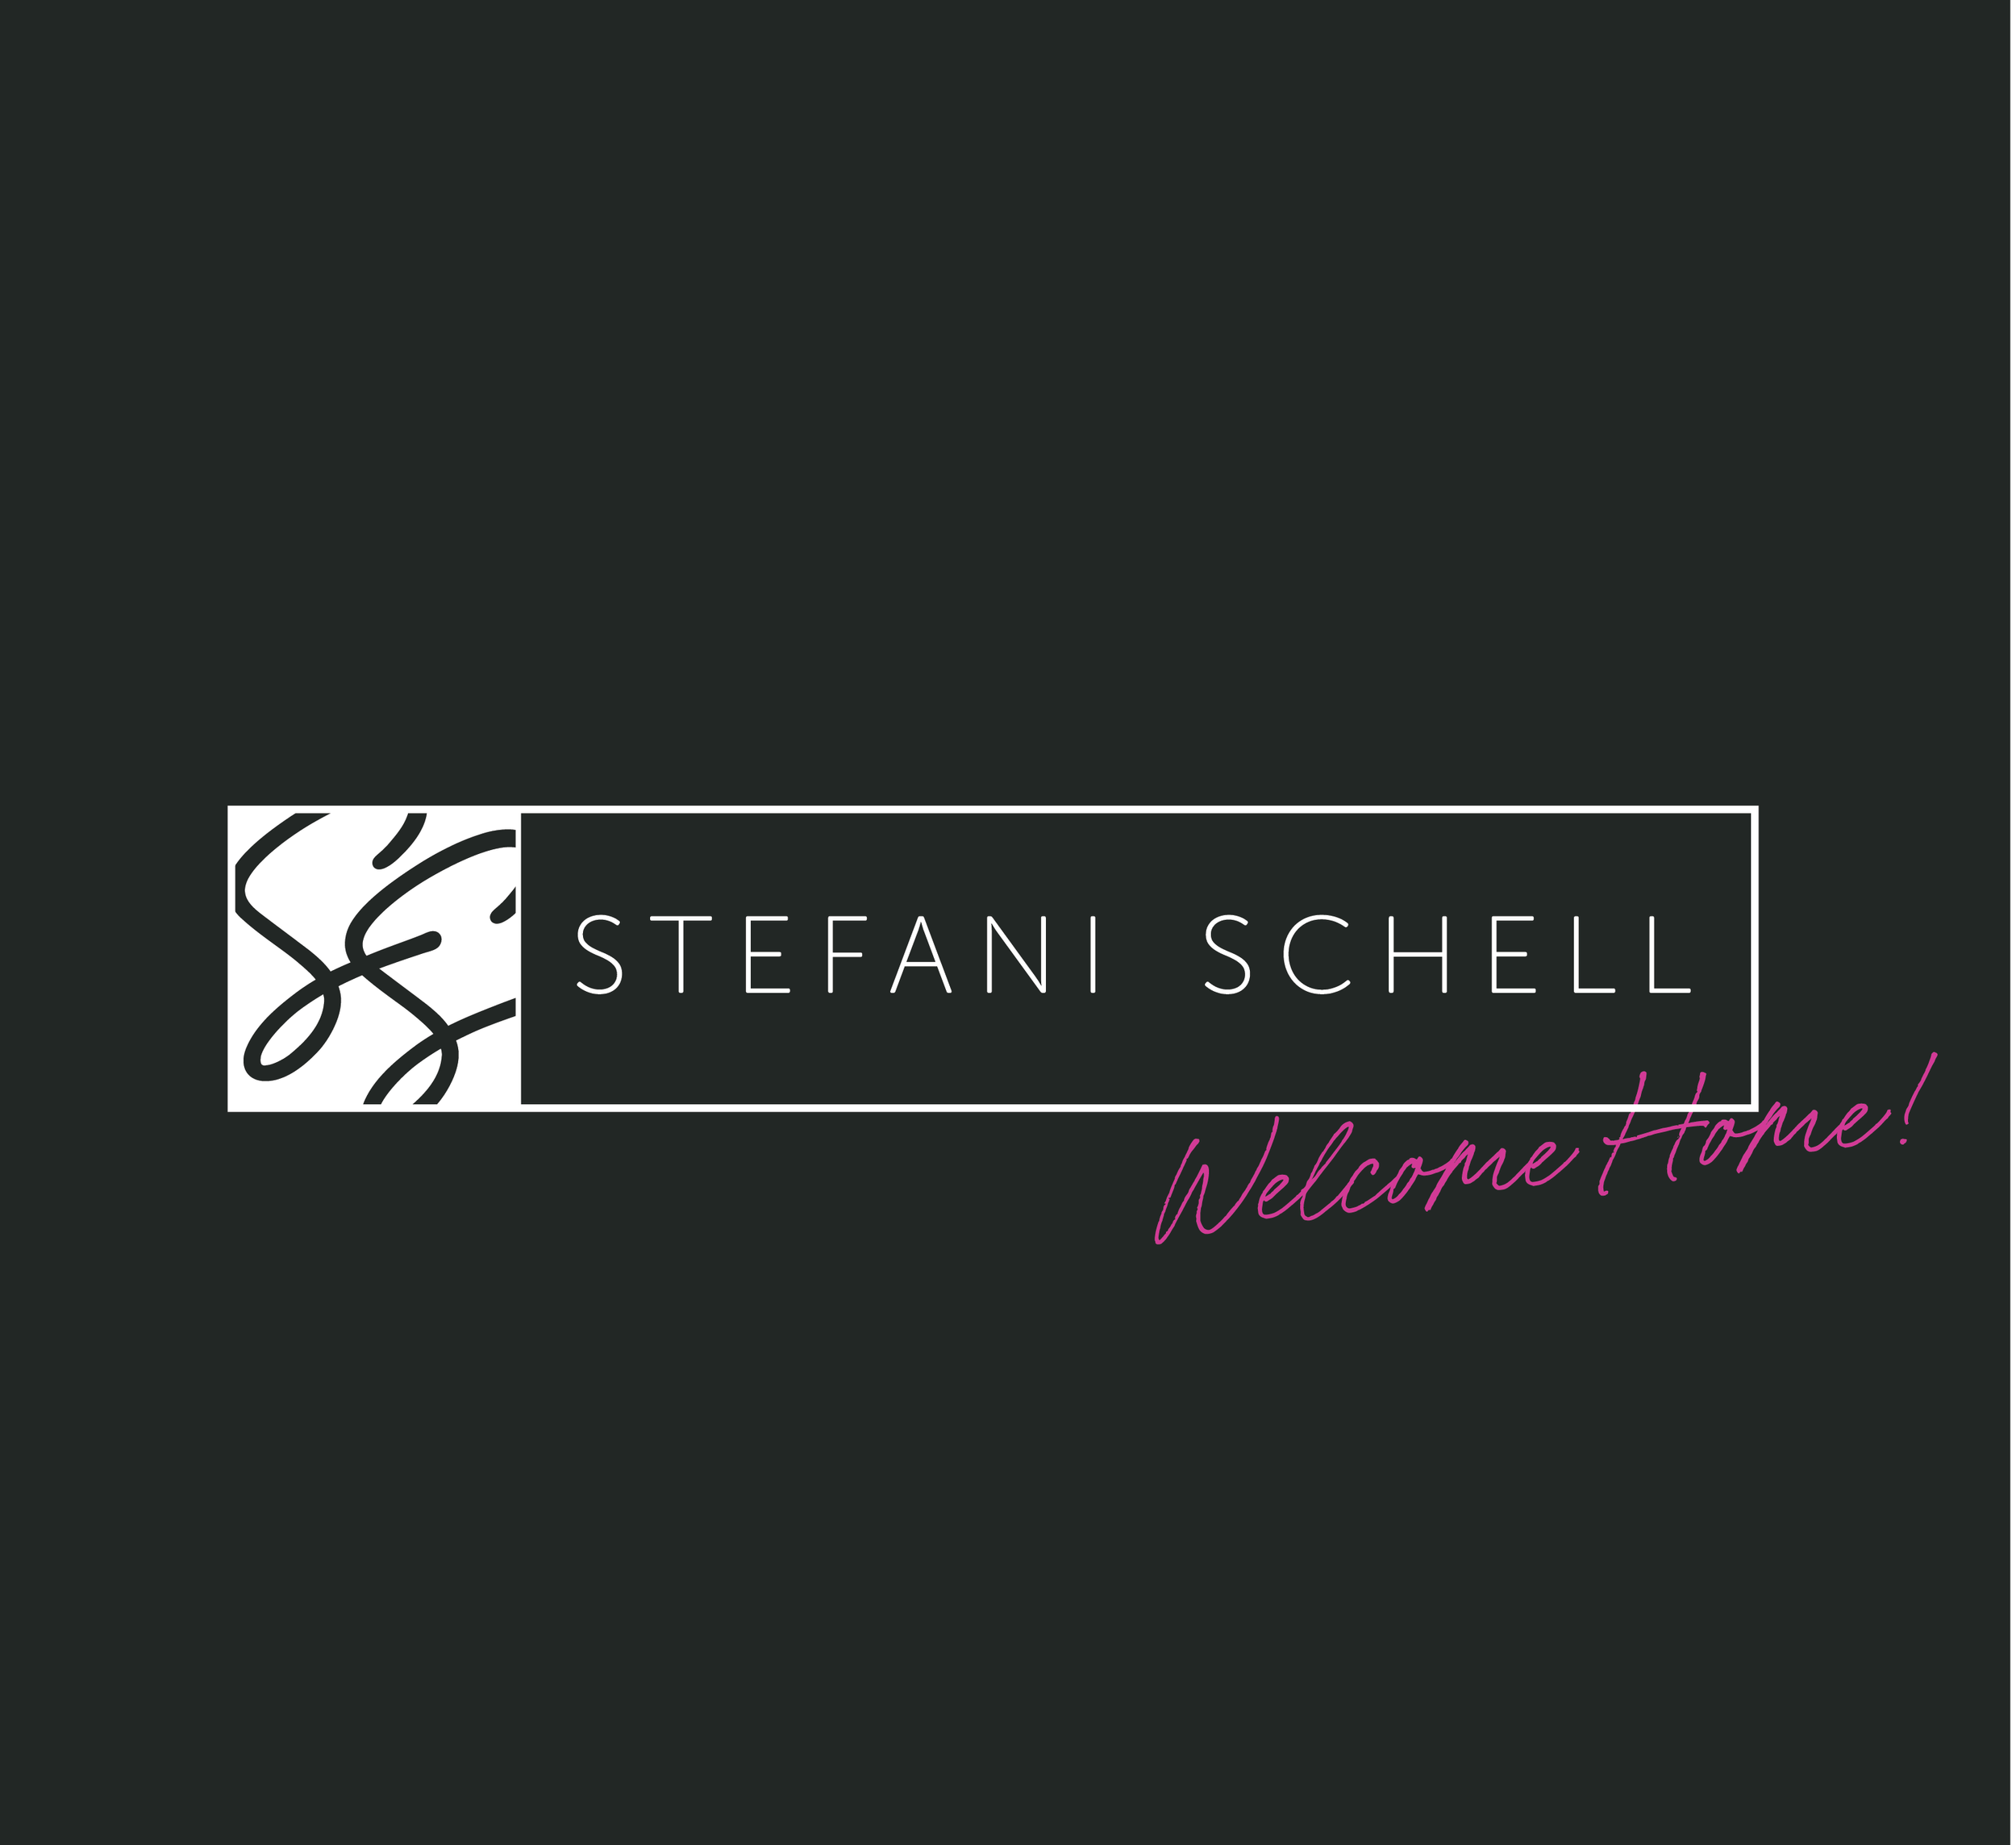 StefaniSchell-BrandDisplay1-22.png